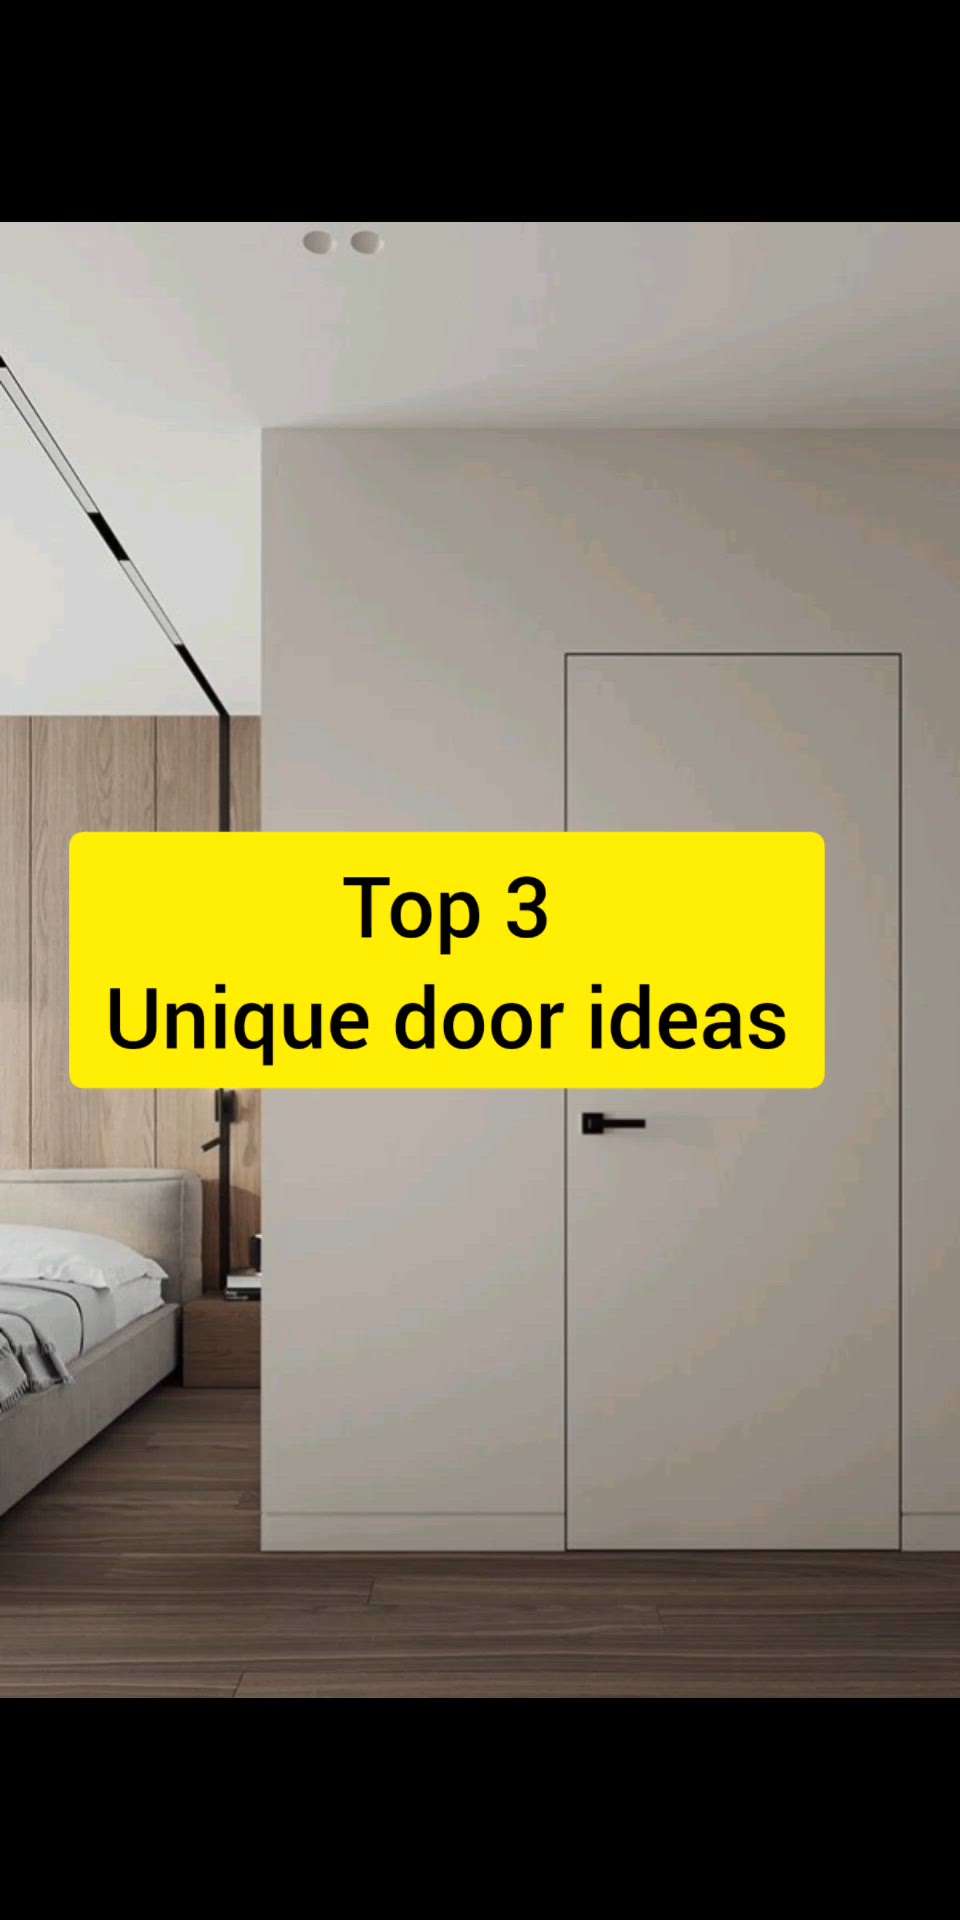 #creatorsofkolo #doors #buy #rightdoors #slidingdoors #invisibleslidingdoors #twowaydoors #modernhouse #noframedoors #doordesigns #doorideas
lets see these 3 door ideas for your modern house
#trending #viralreels